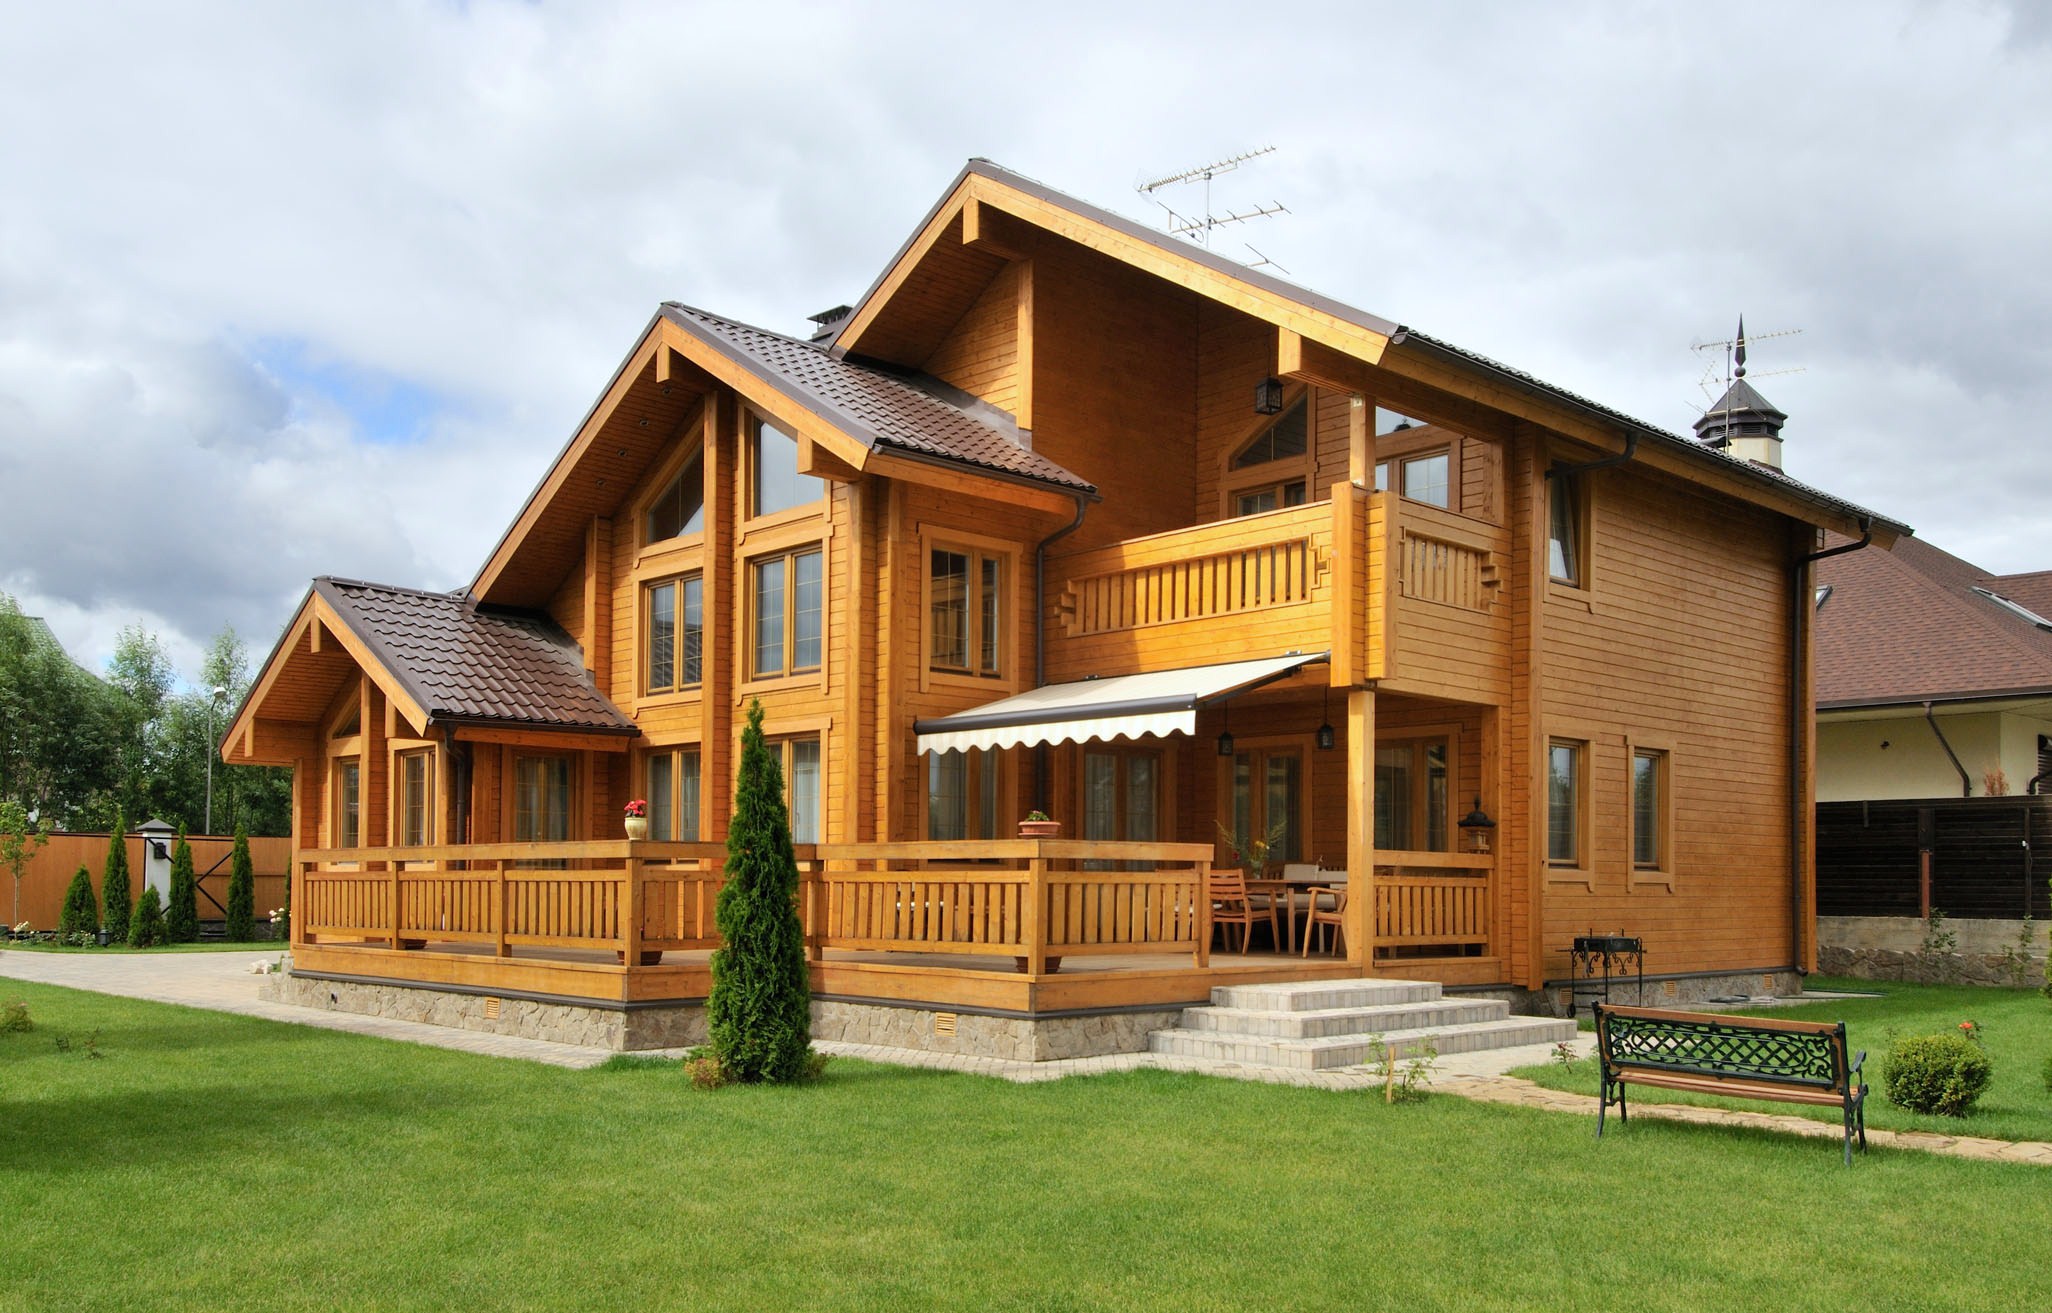 Haus aus Holz - die Kosten für den Bau selbst